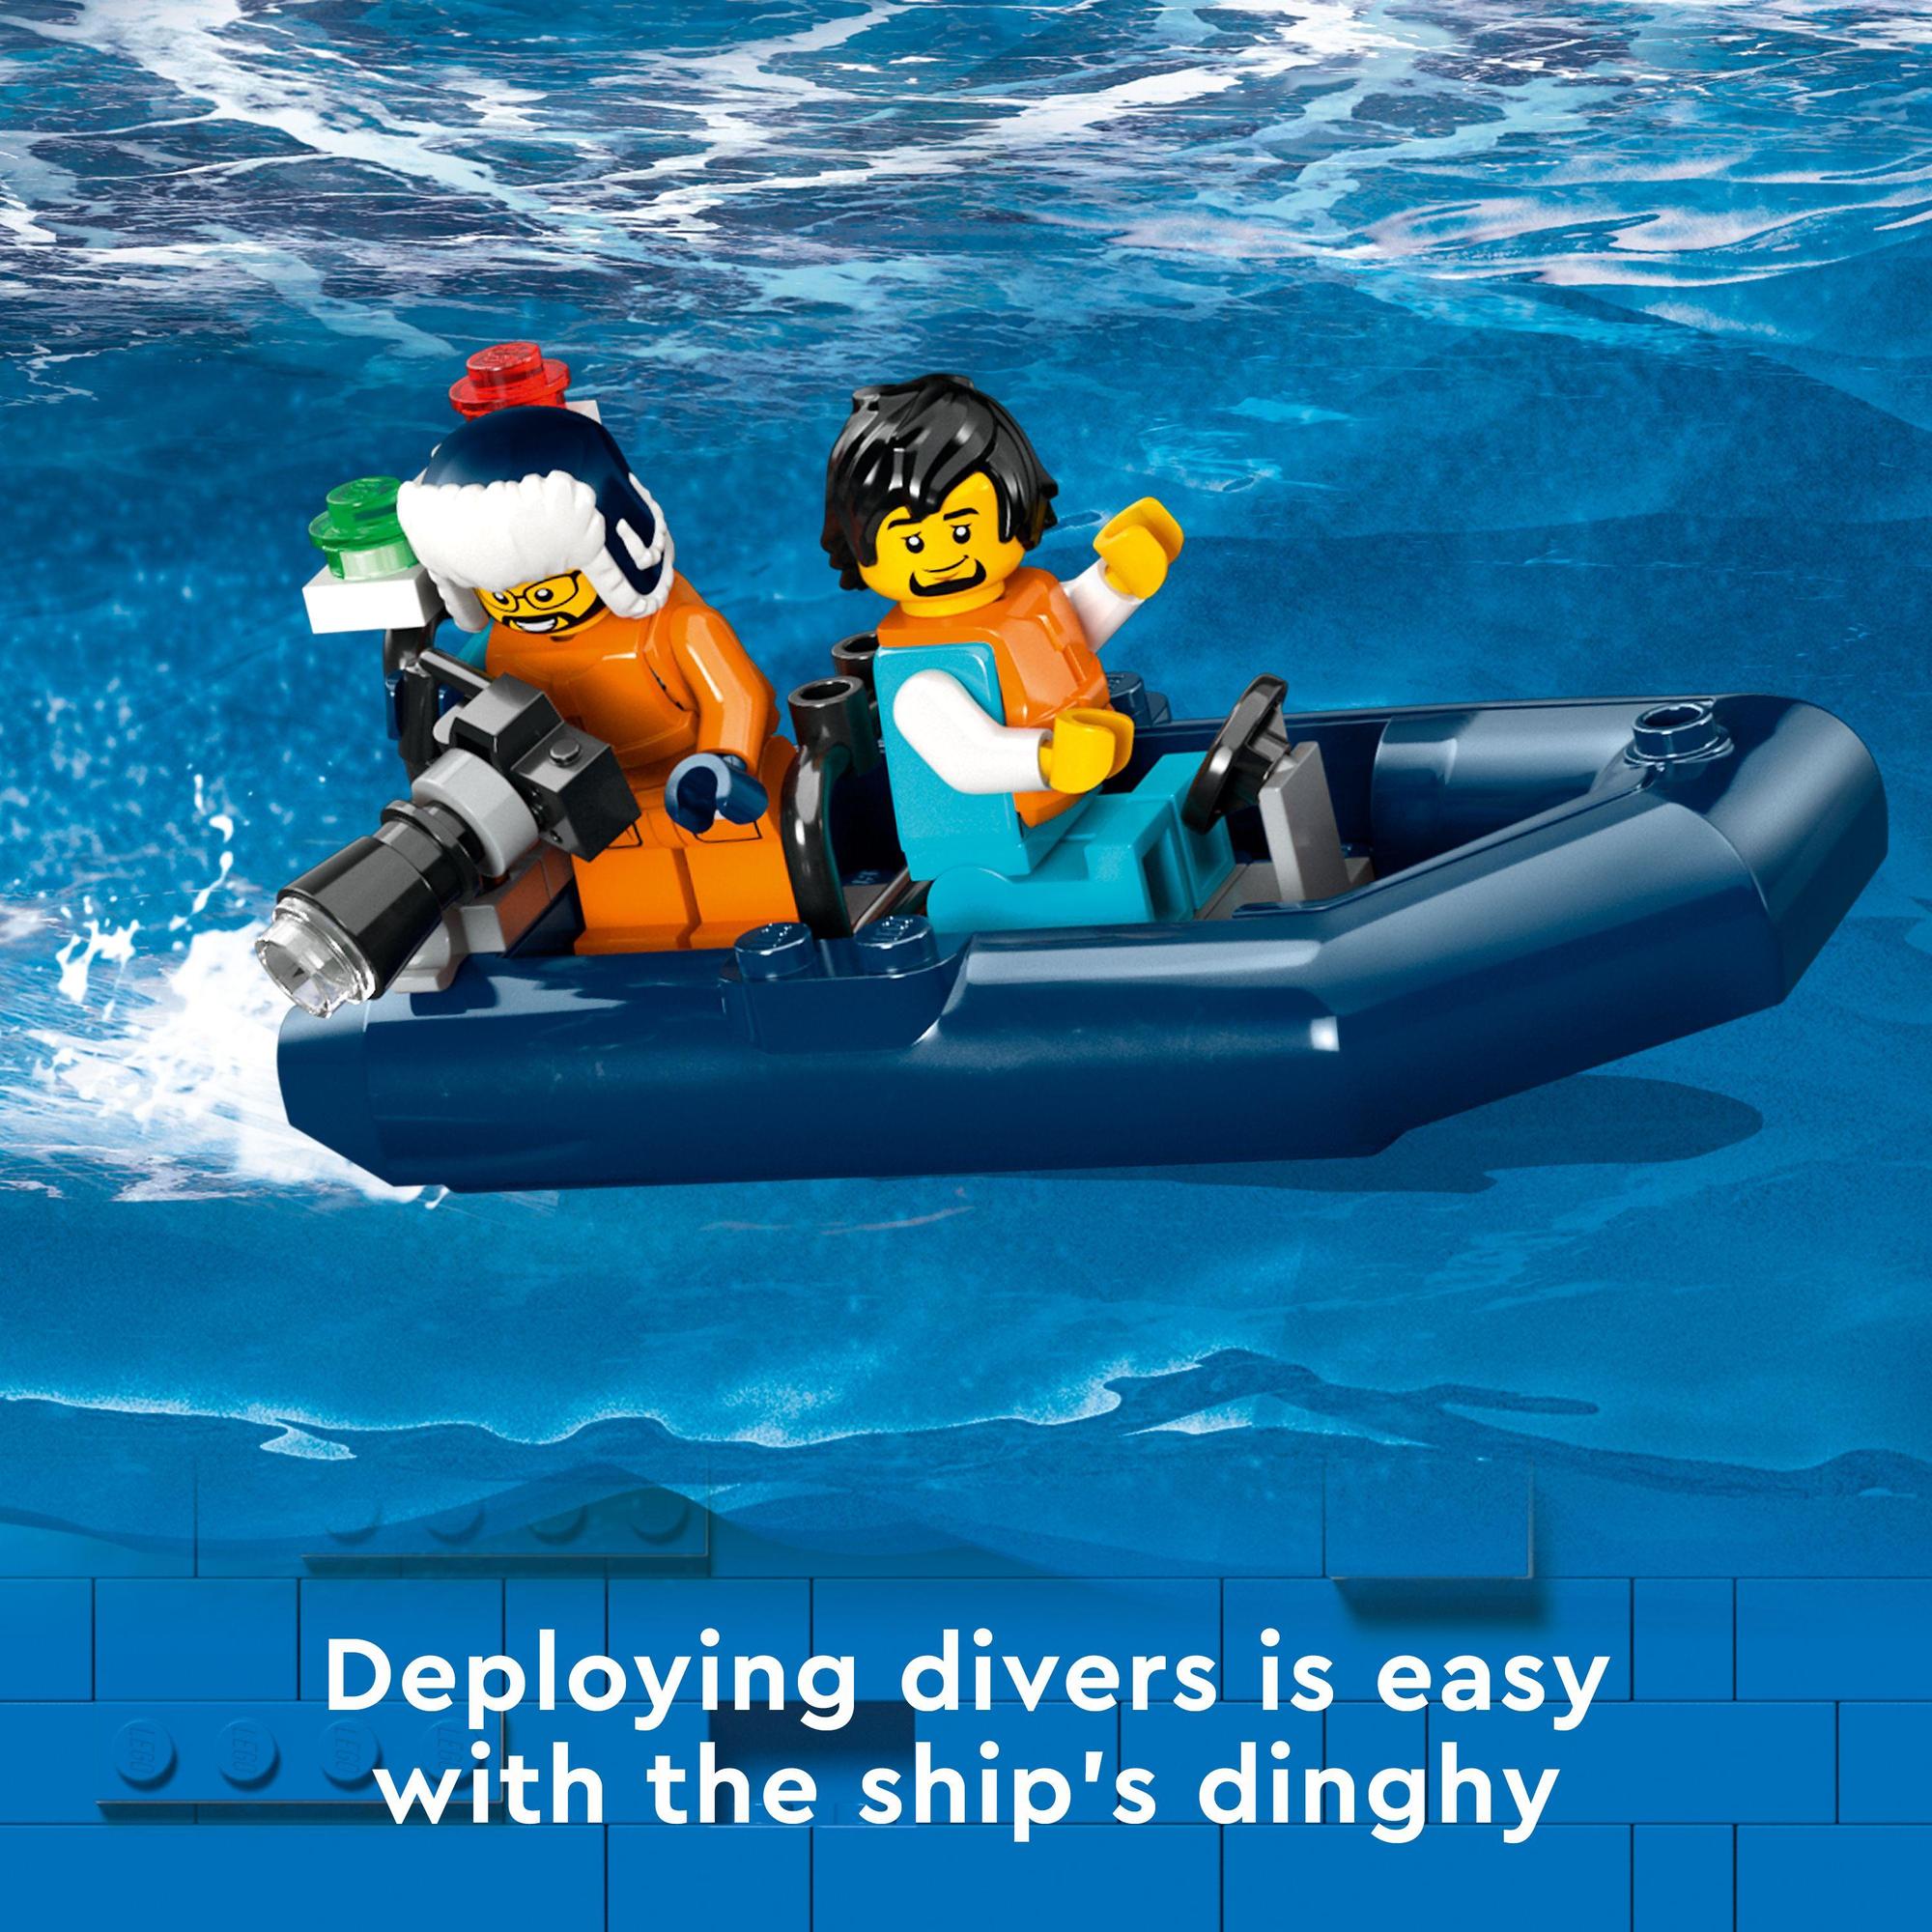 LEGO City 60368 Đồ chơi lắp ráp Tàu thám hiểm bắc cực (815 chi tiết)